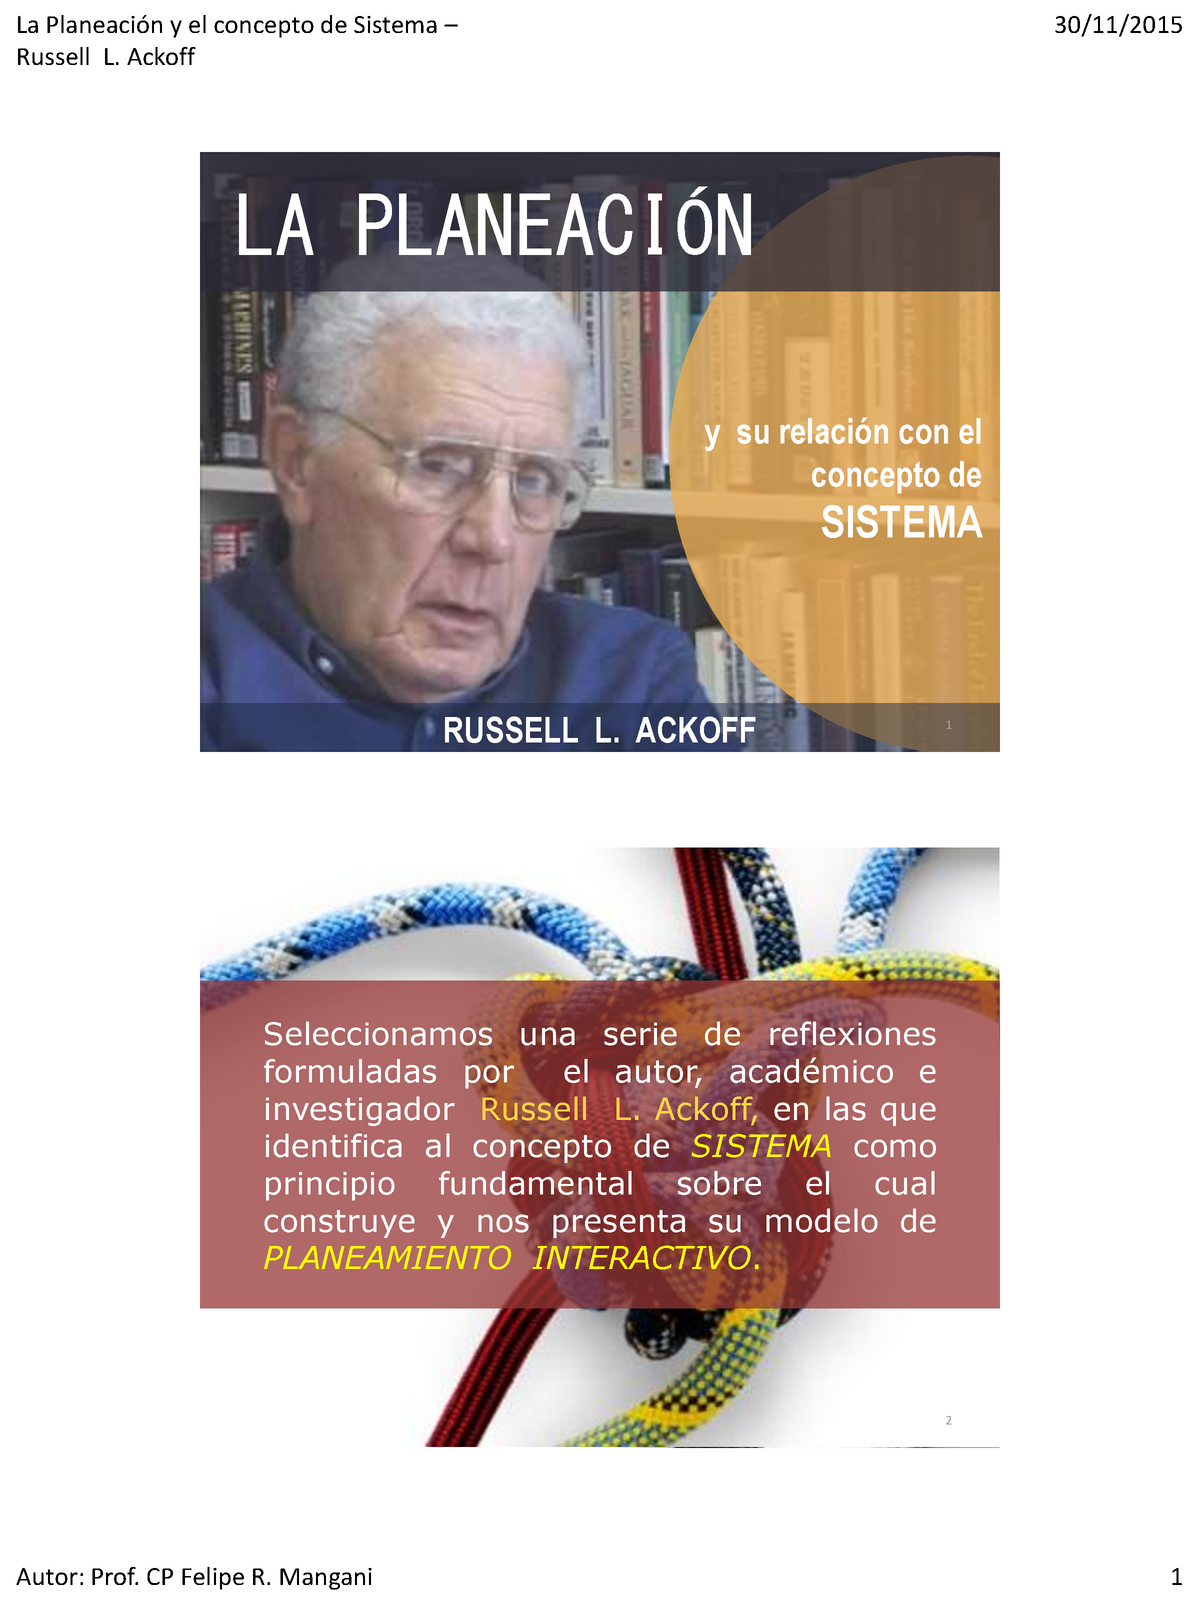 La Planeacion Y El Concepto De Sistema Ackoff Russell L Ackoff Y Su Relación Con El 3420